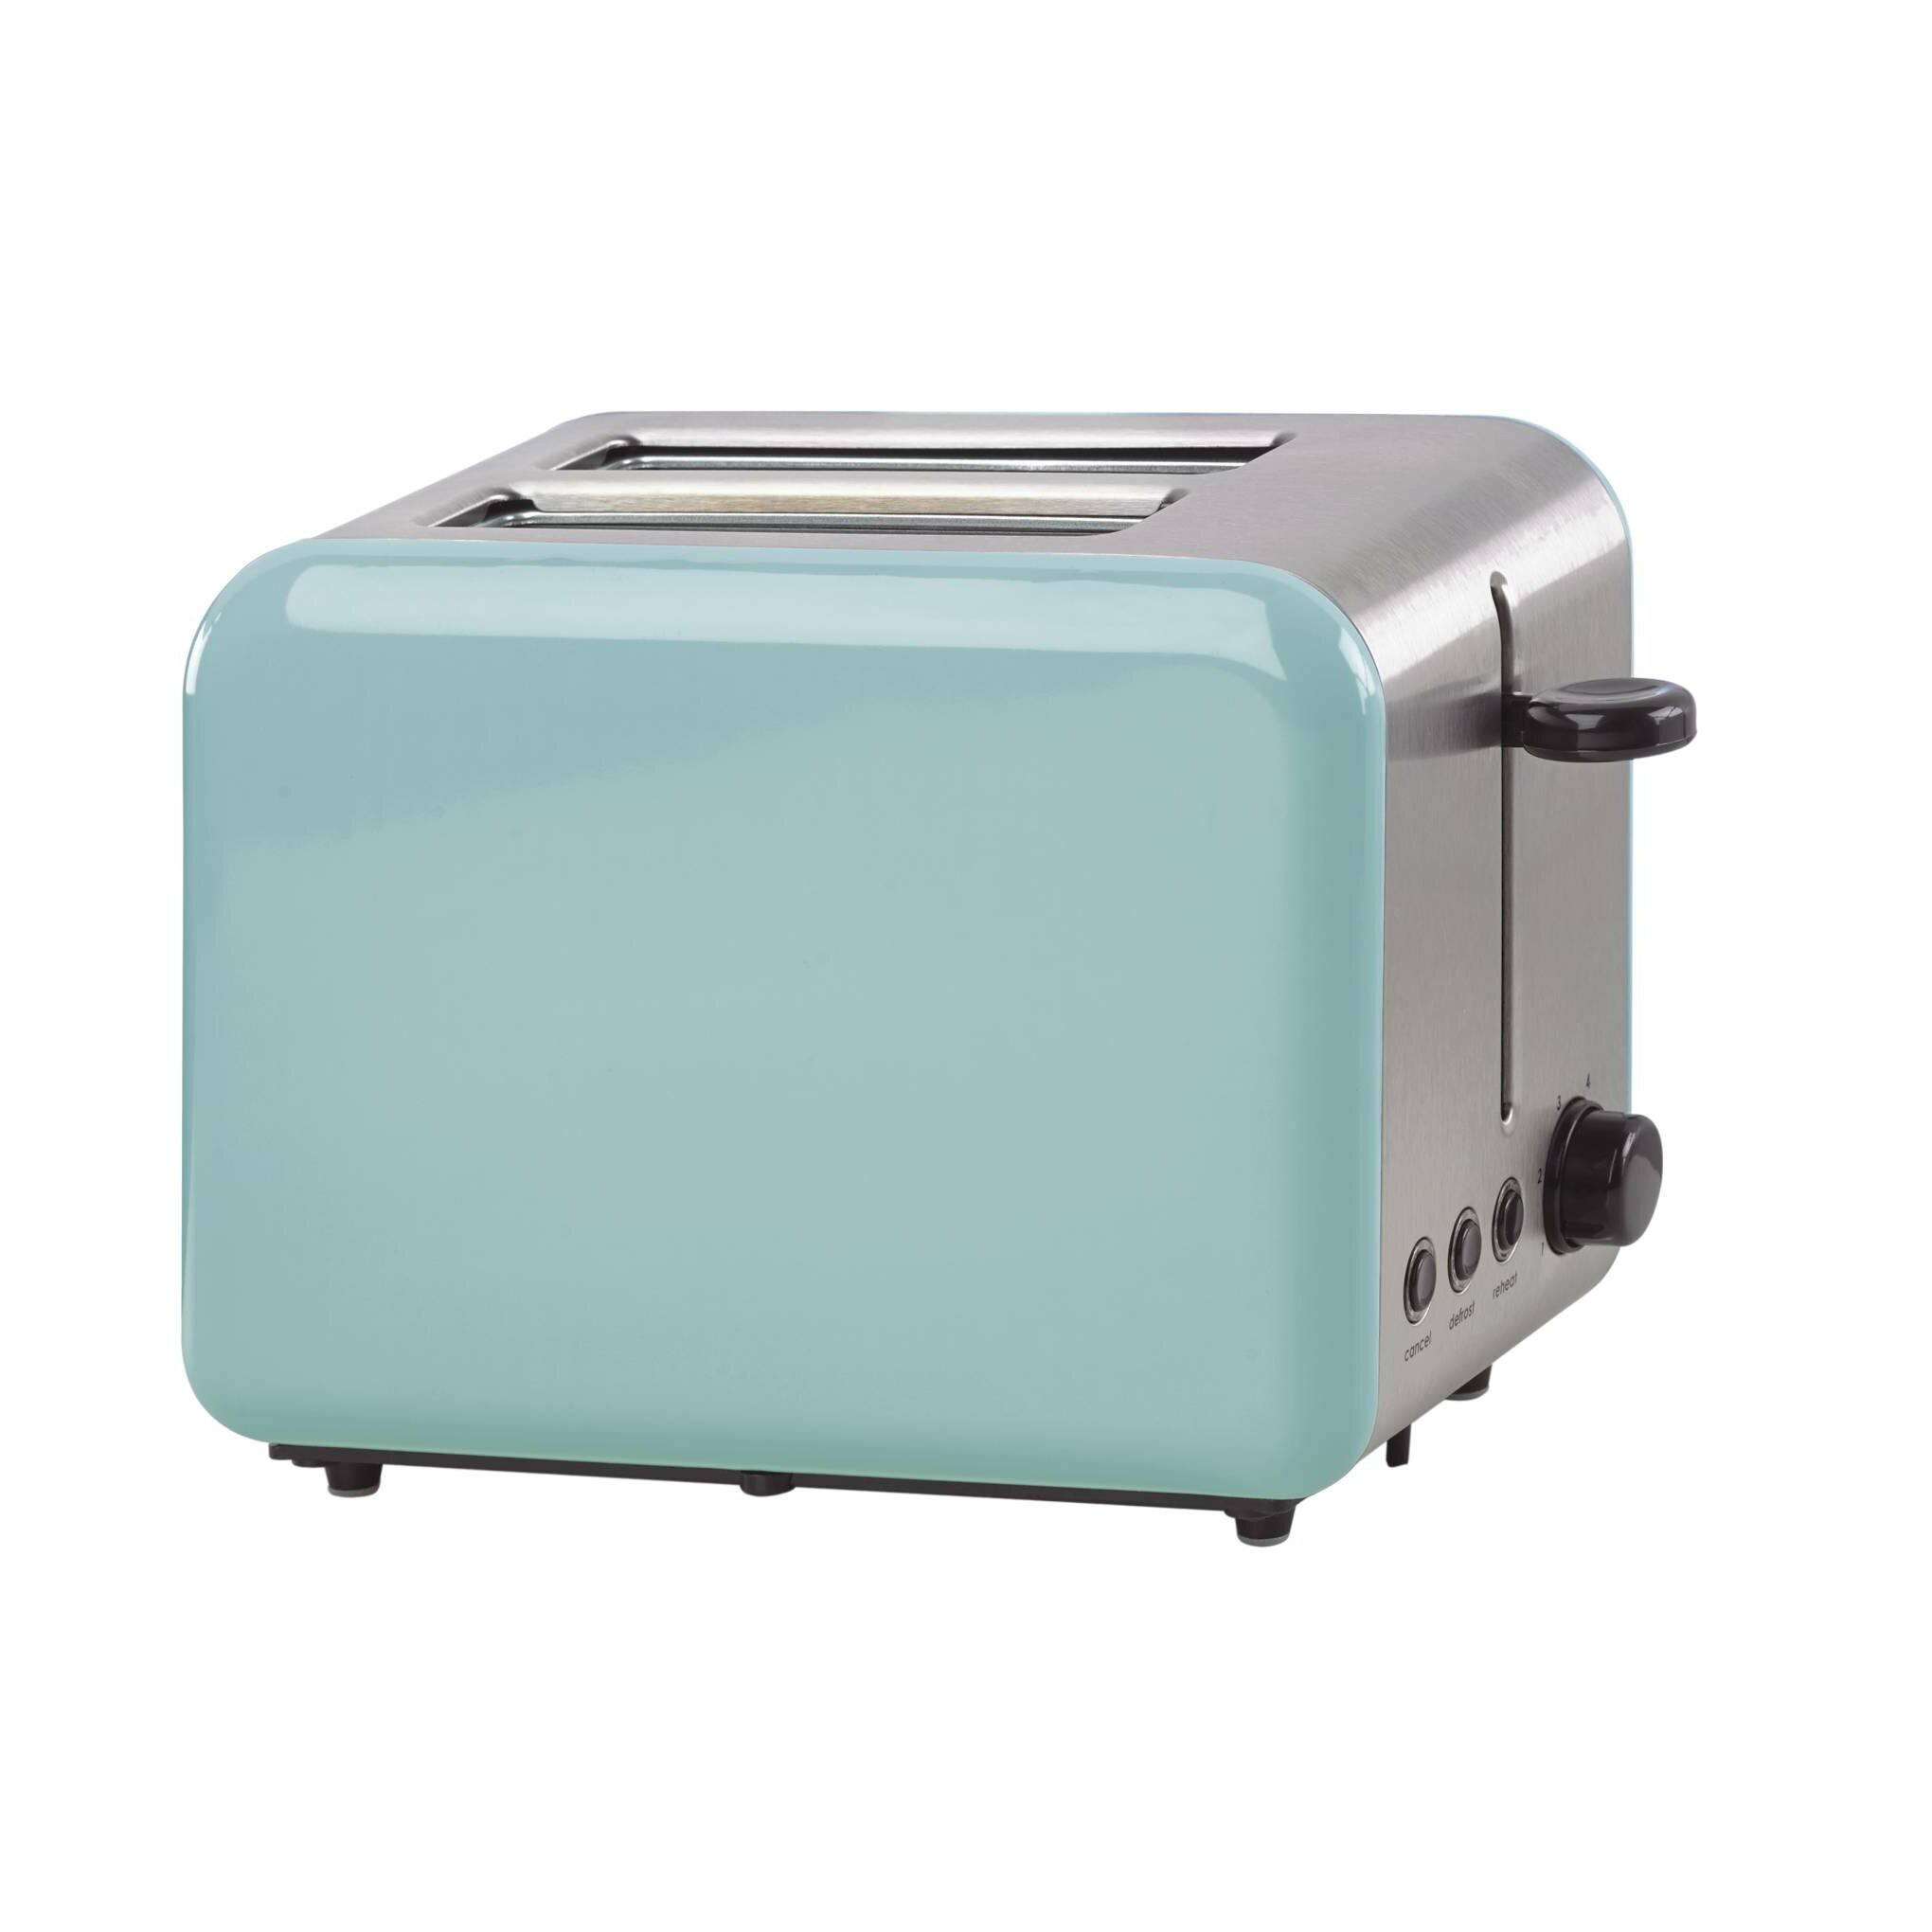 https://assets.wfcdn.com/im/35566174/compr-r85/4685/46859244/2-slice-all-in-good-taste-toaster.jpg